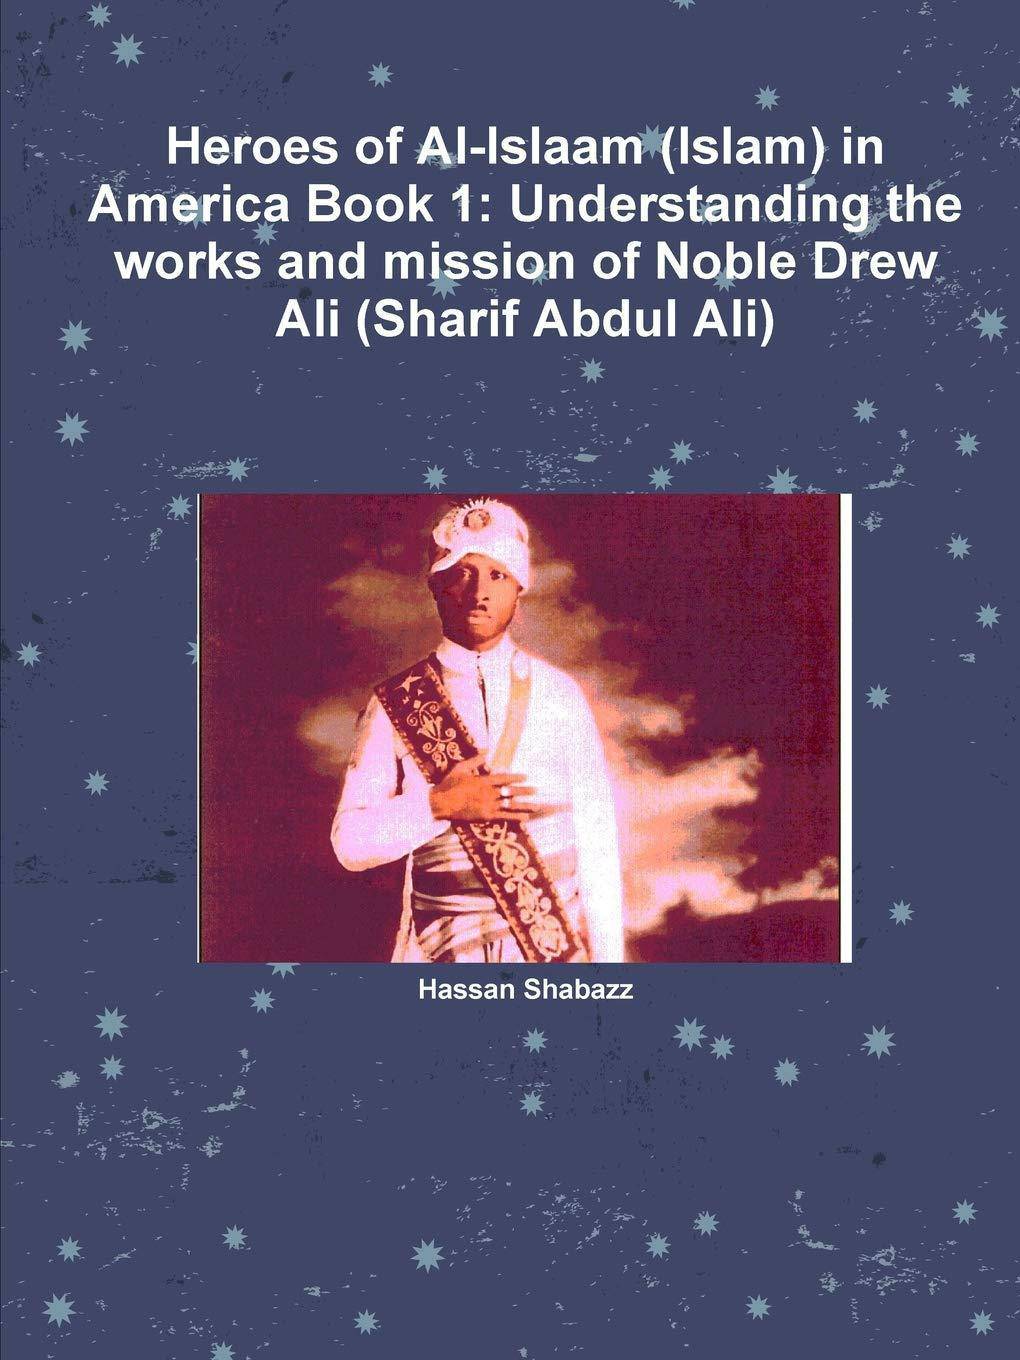 Heroes of Al-Islaam (Islam) in America Book 1 - SureShot Books Publishing LLC